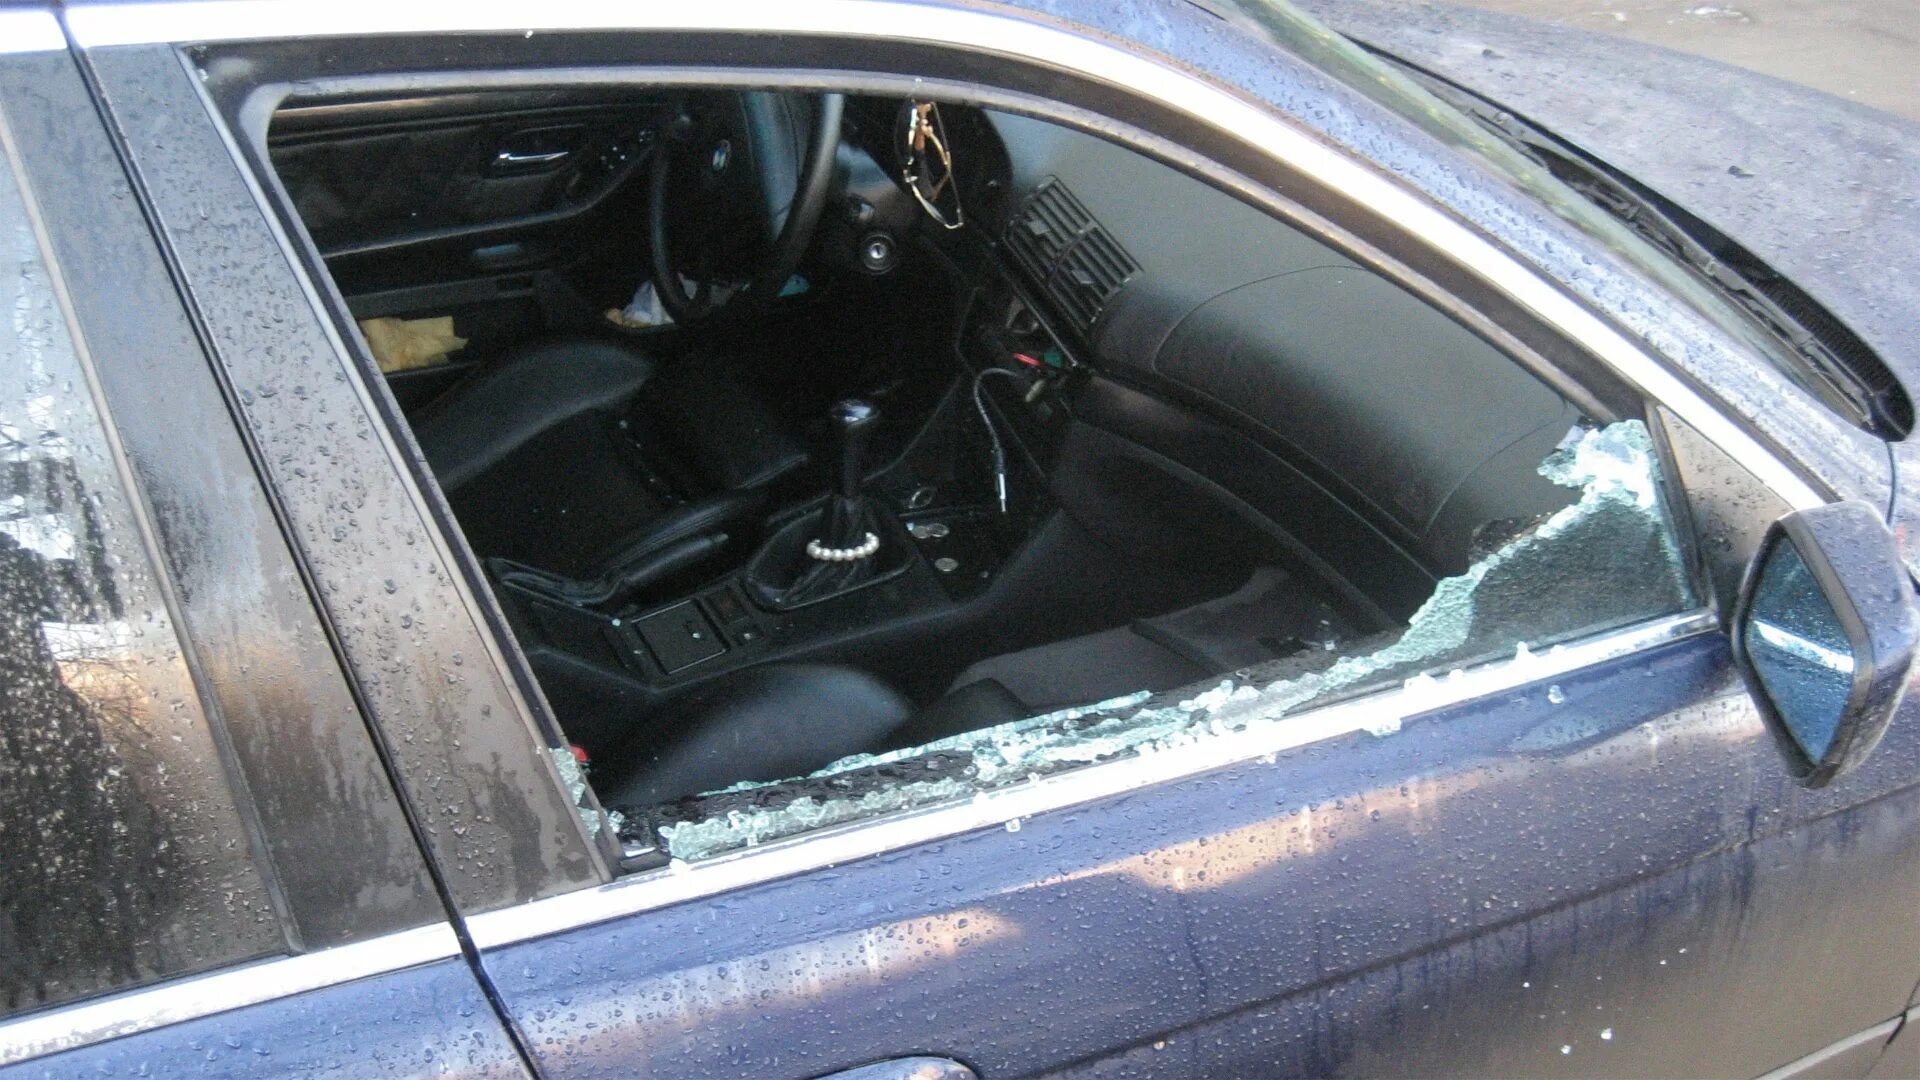 Разбили окно машины. Разбитое окно машины. Разбитое автомобильное стекло. Разбили стекло в машине. Разбить окно автомобиля.